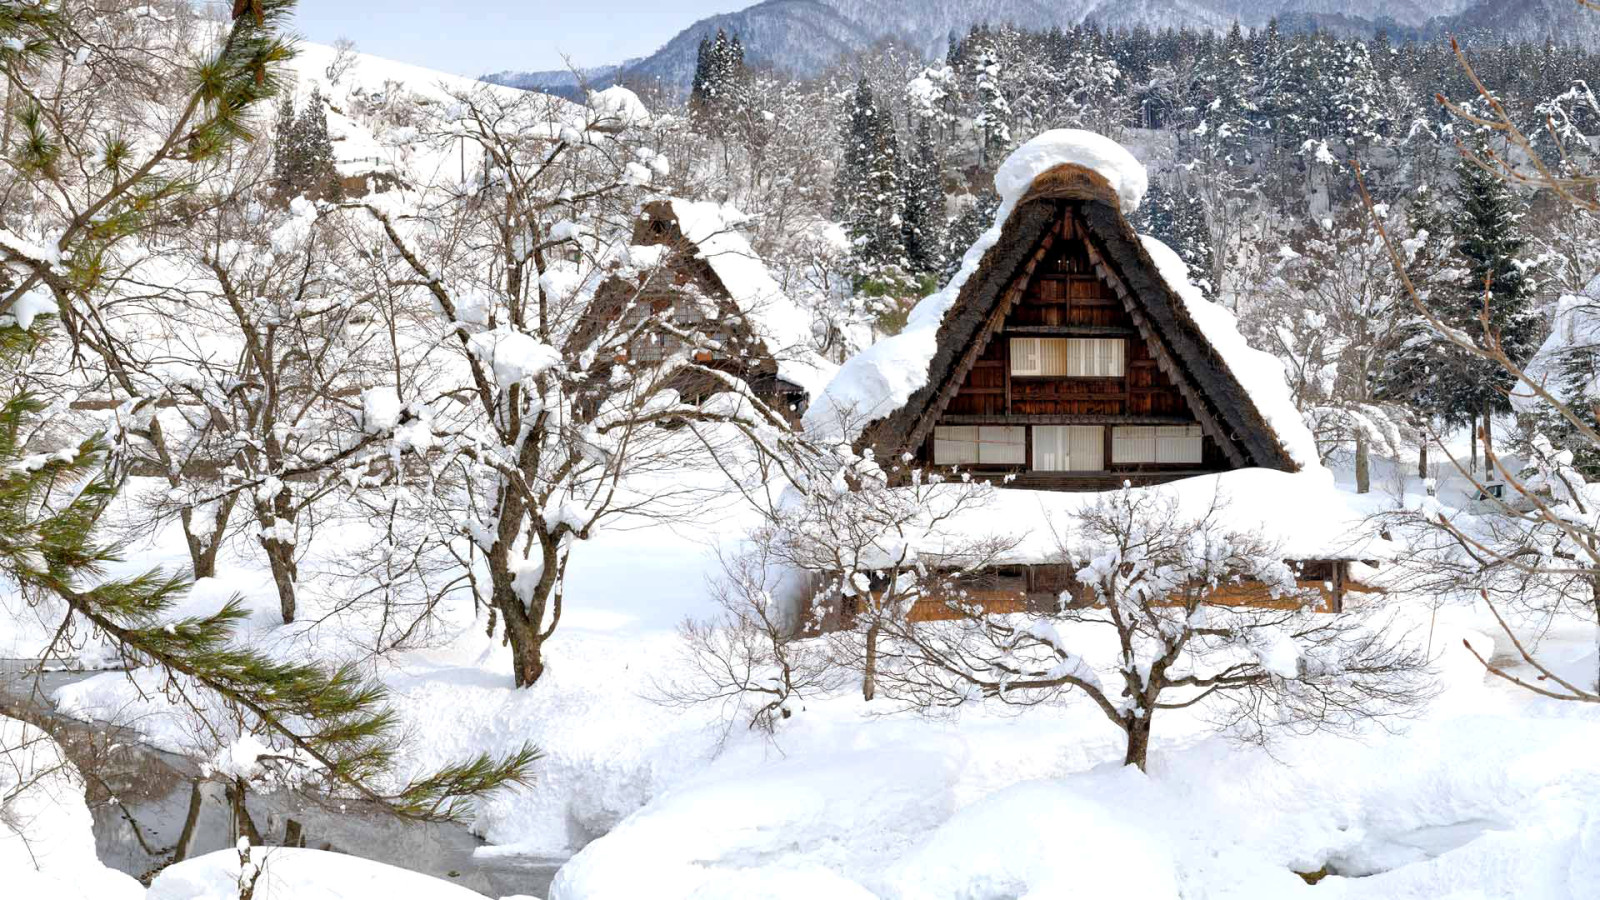 눈, 집, 겨울, 일본, 시라카와 고, 고카 야마